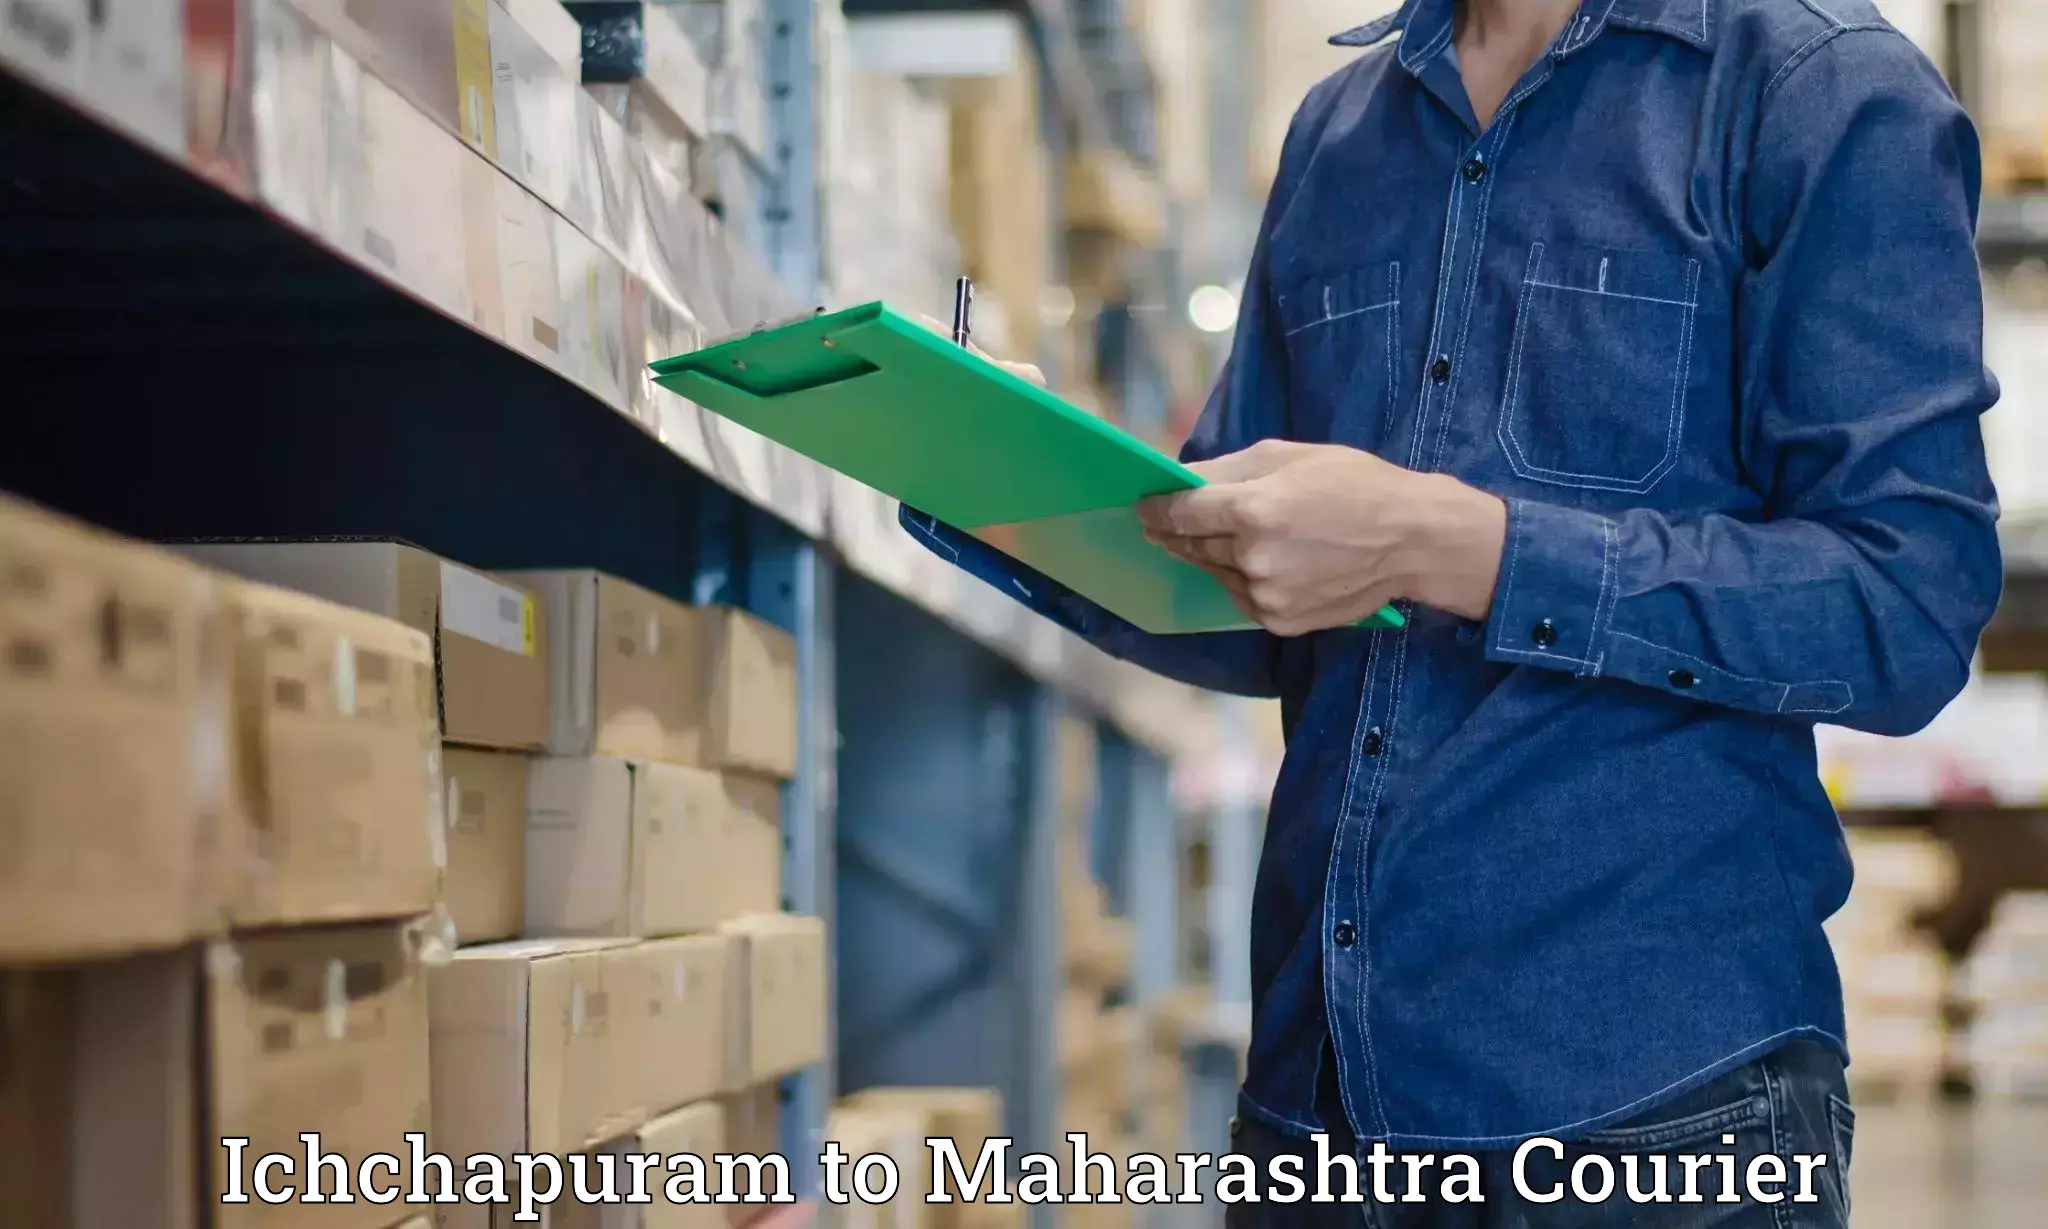 Specialized courier services Ichchapuram to Kolhapur